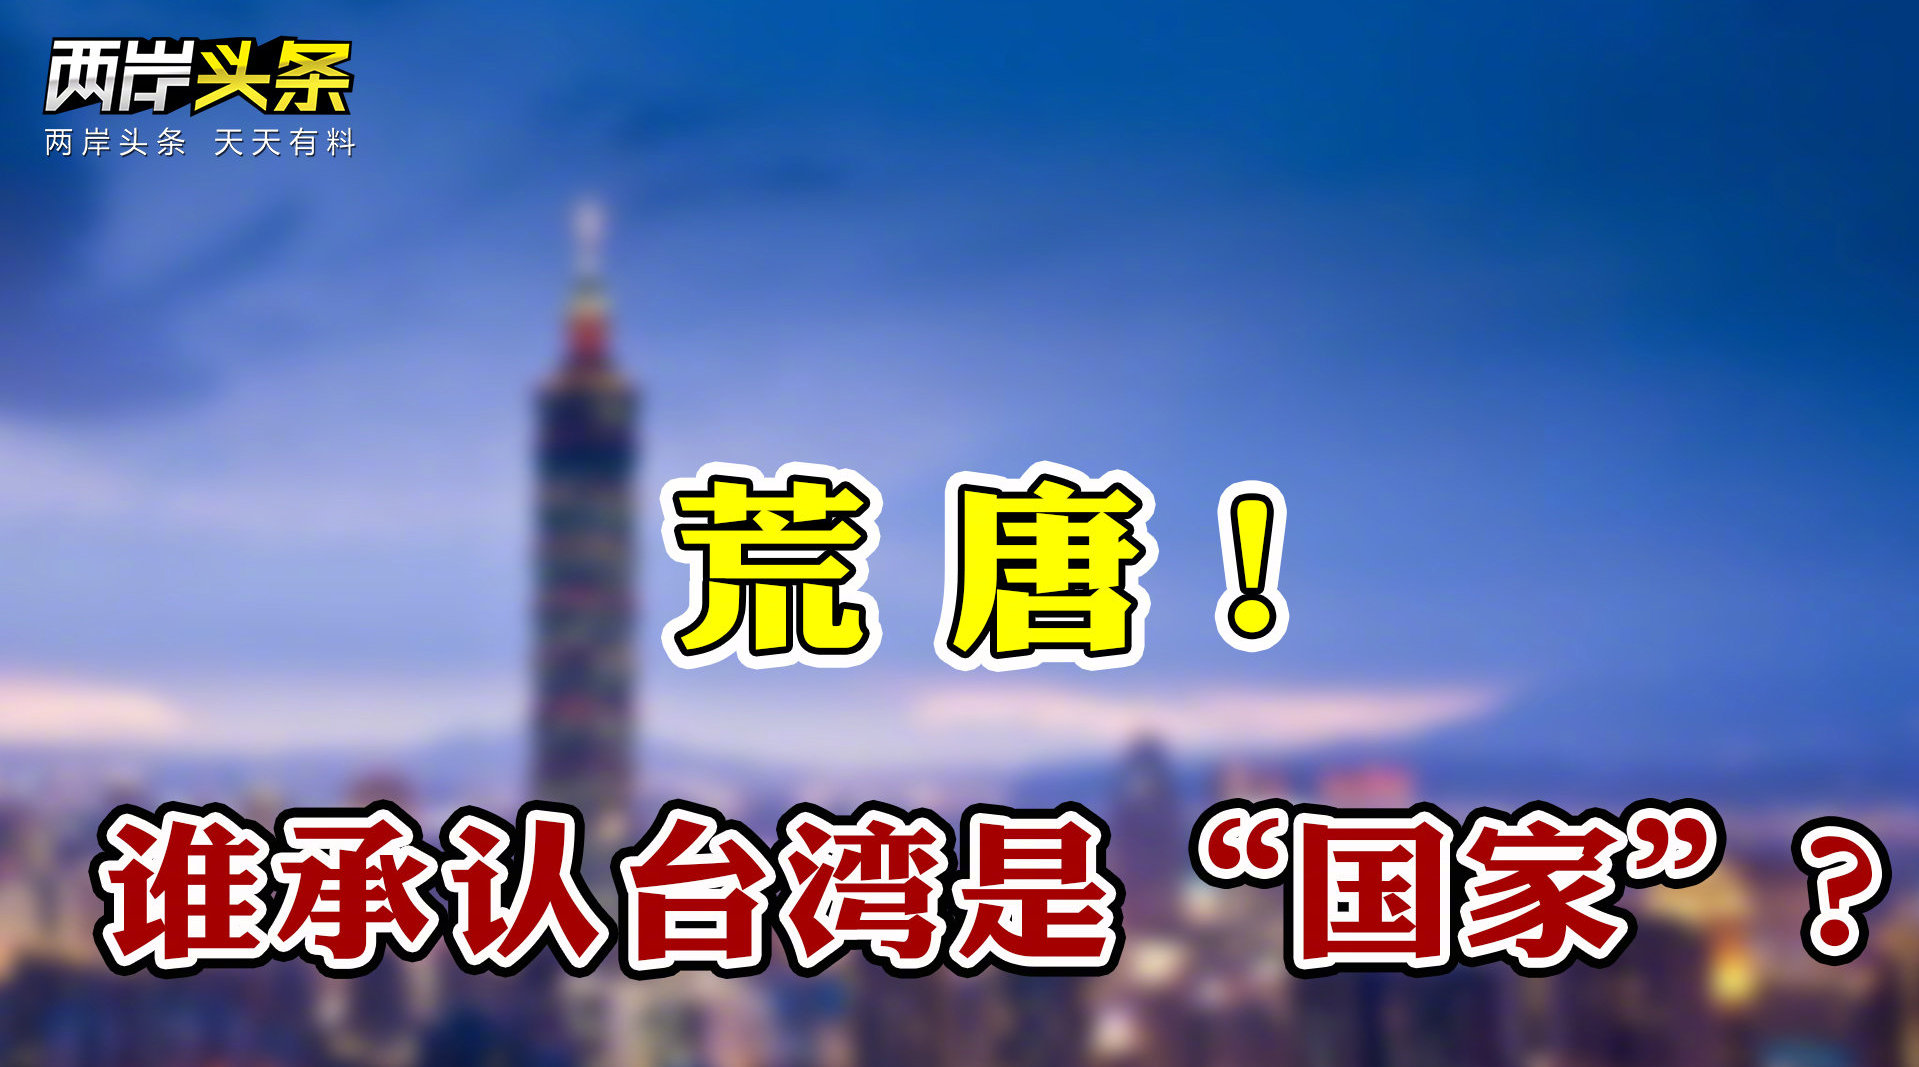 法媒称台湾为“国家”？我驻法使馆驳斥 国民党将搬迁为缩减开支